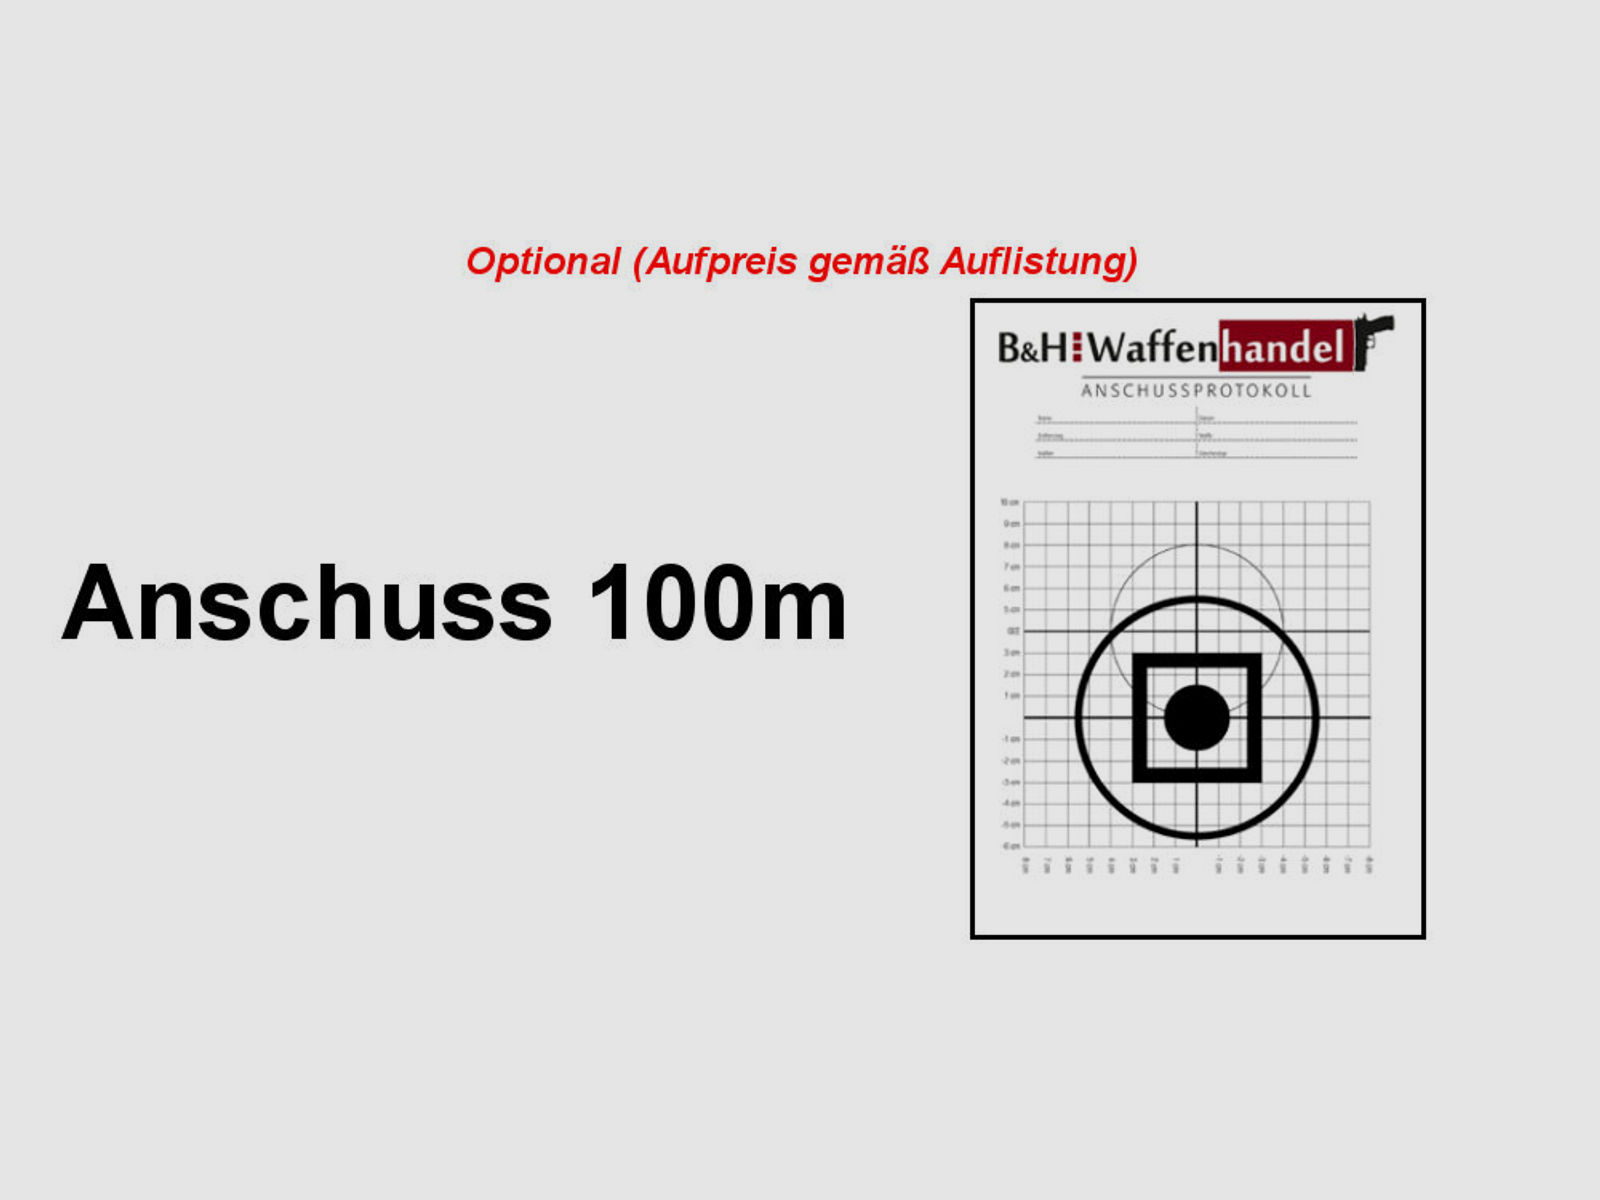 Brenner Komplettpaket:	 Brenner BR20 Lochschaft mit Bushnell 2.5-15x50 (m. Parallaxe Verstellung)